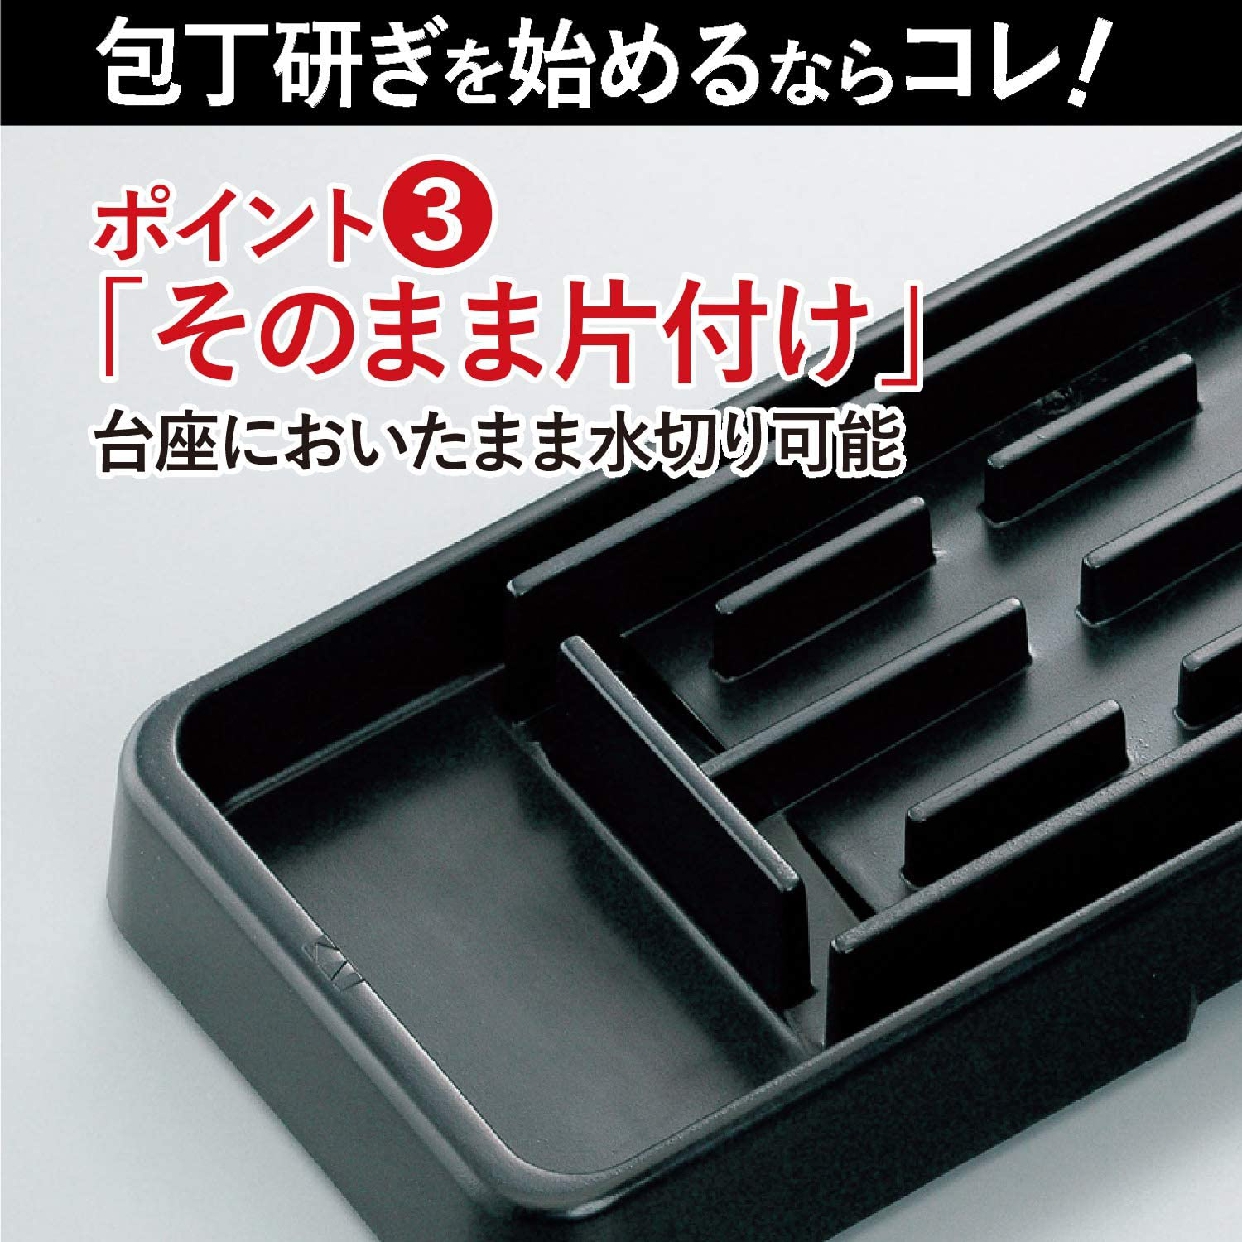 貝印(KAI) コンビ 砥石セット (#400・#1000) 日本製 グレー AP0305の商品画像4 